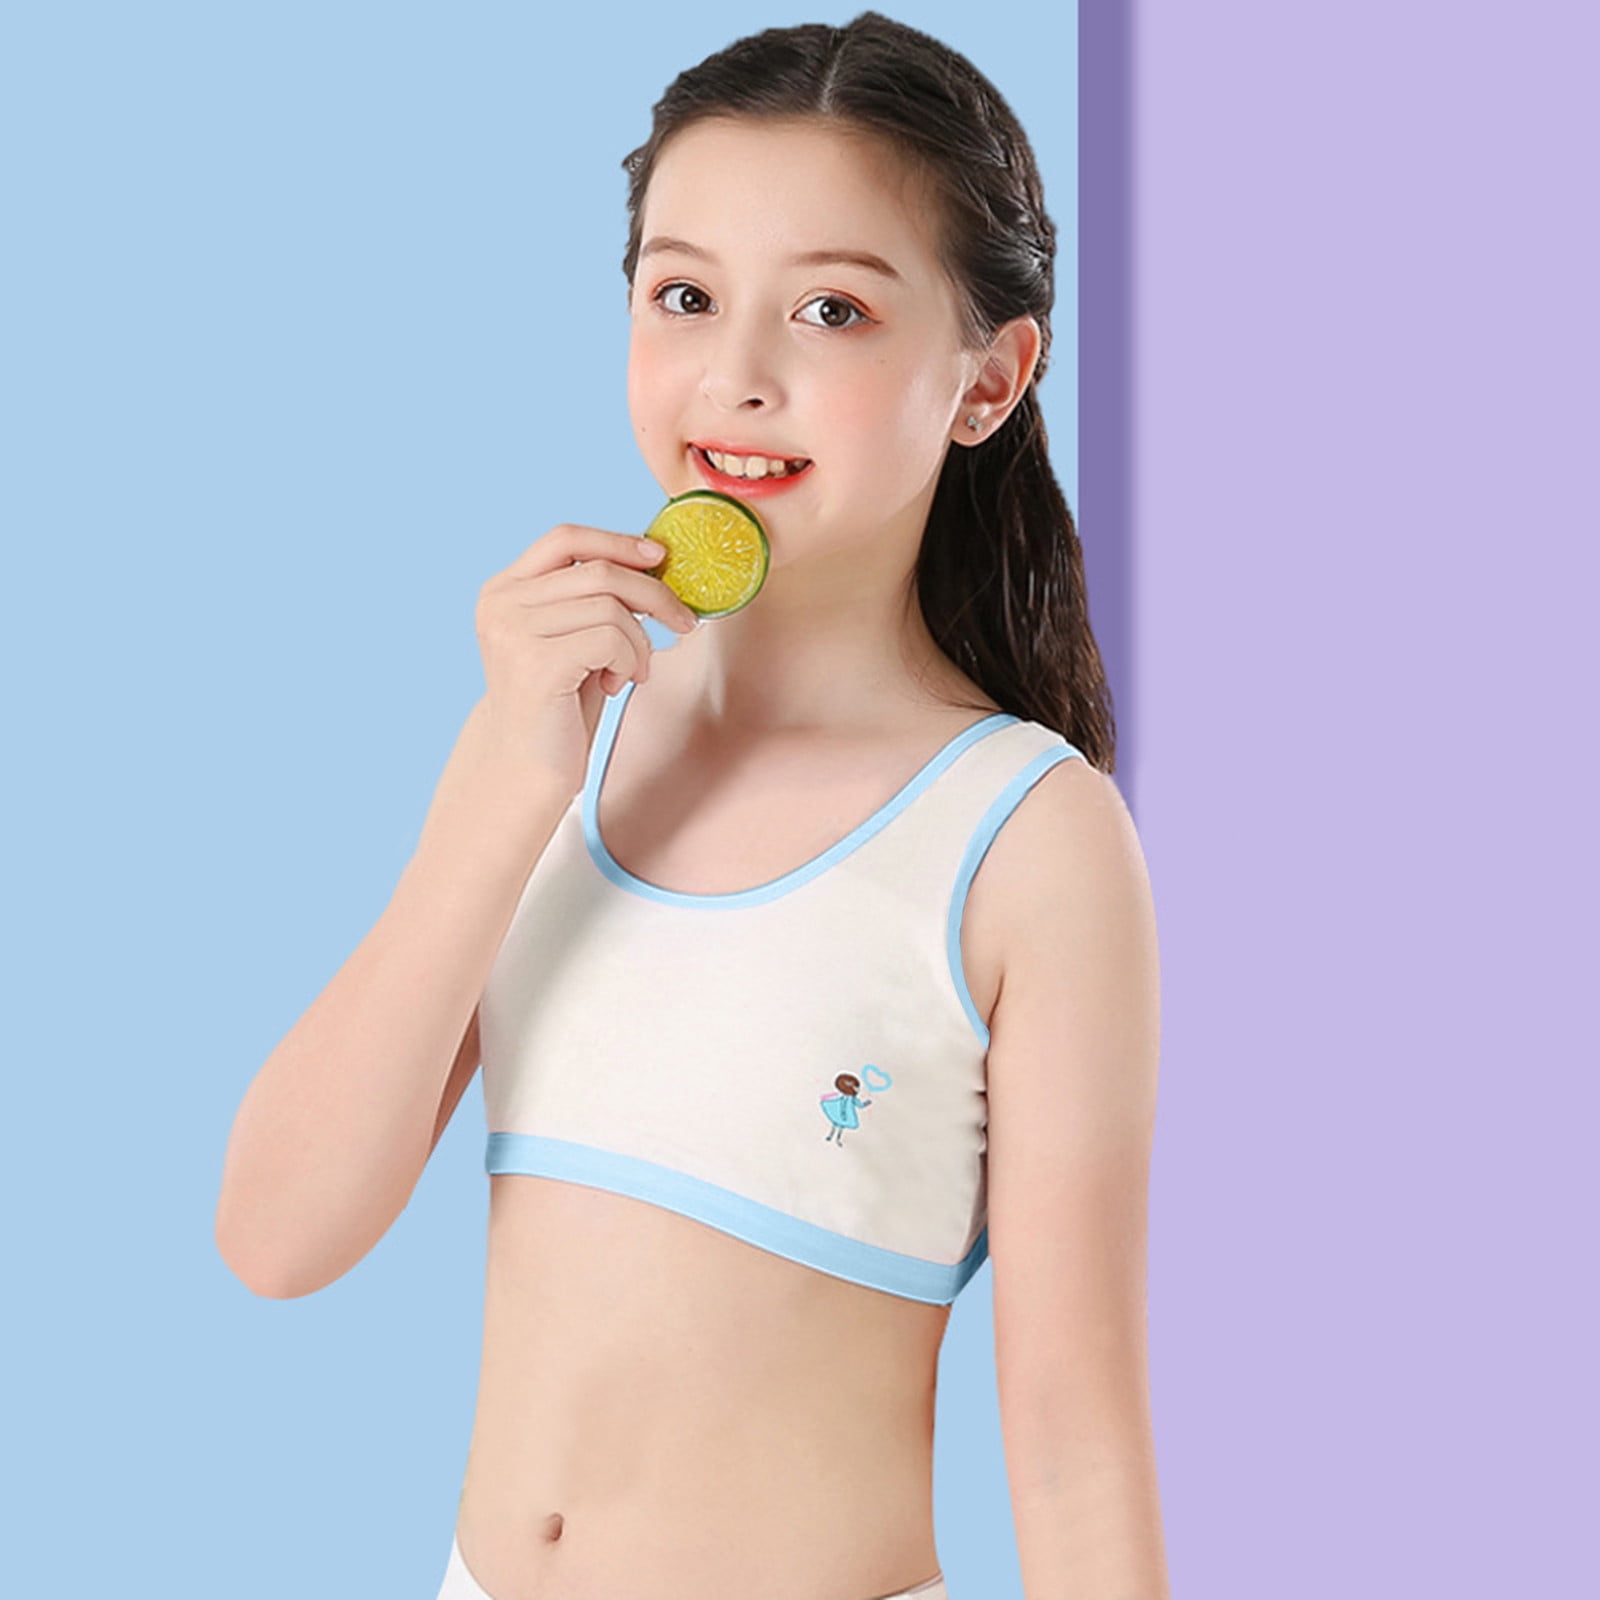 Ampere nederlag Vær venlig Kids Girls Underwear Cotton Bra Vest Children Underclothes Sport Undies  Clothes - Walmart.com